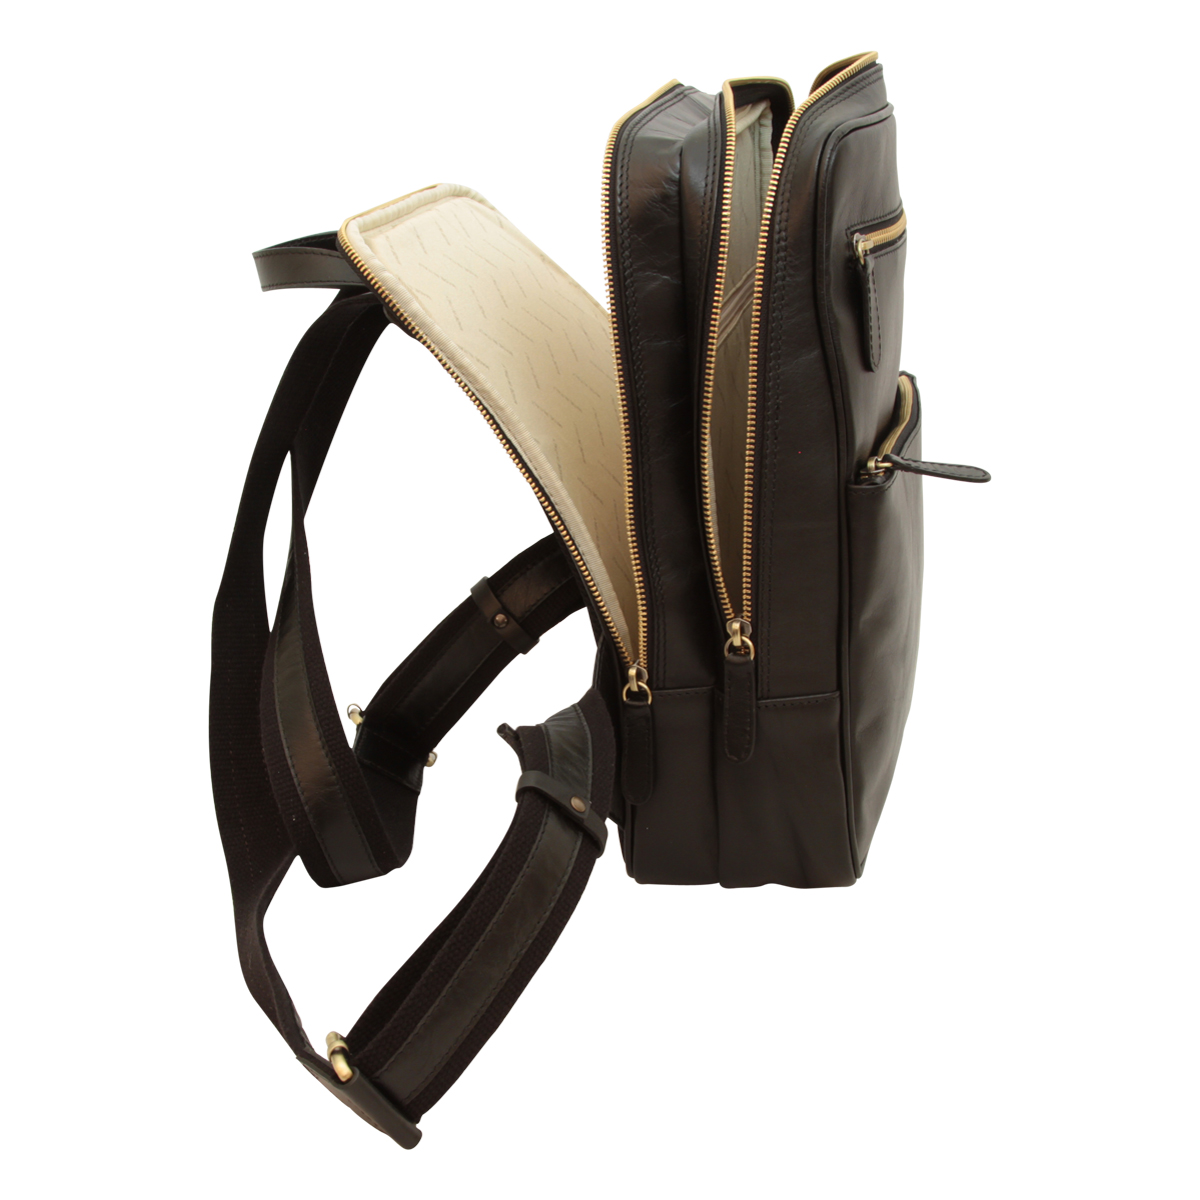 Leather backpack - black|413589NE|Old Angler Firenze